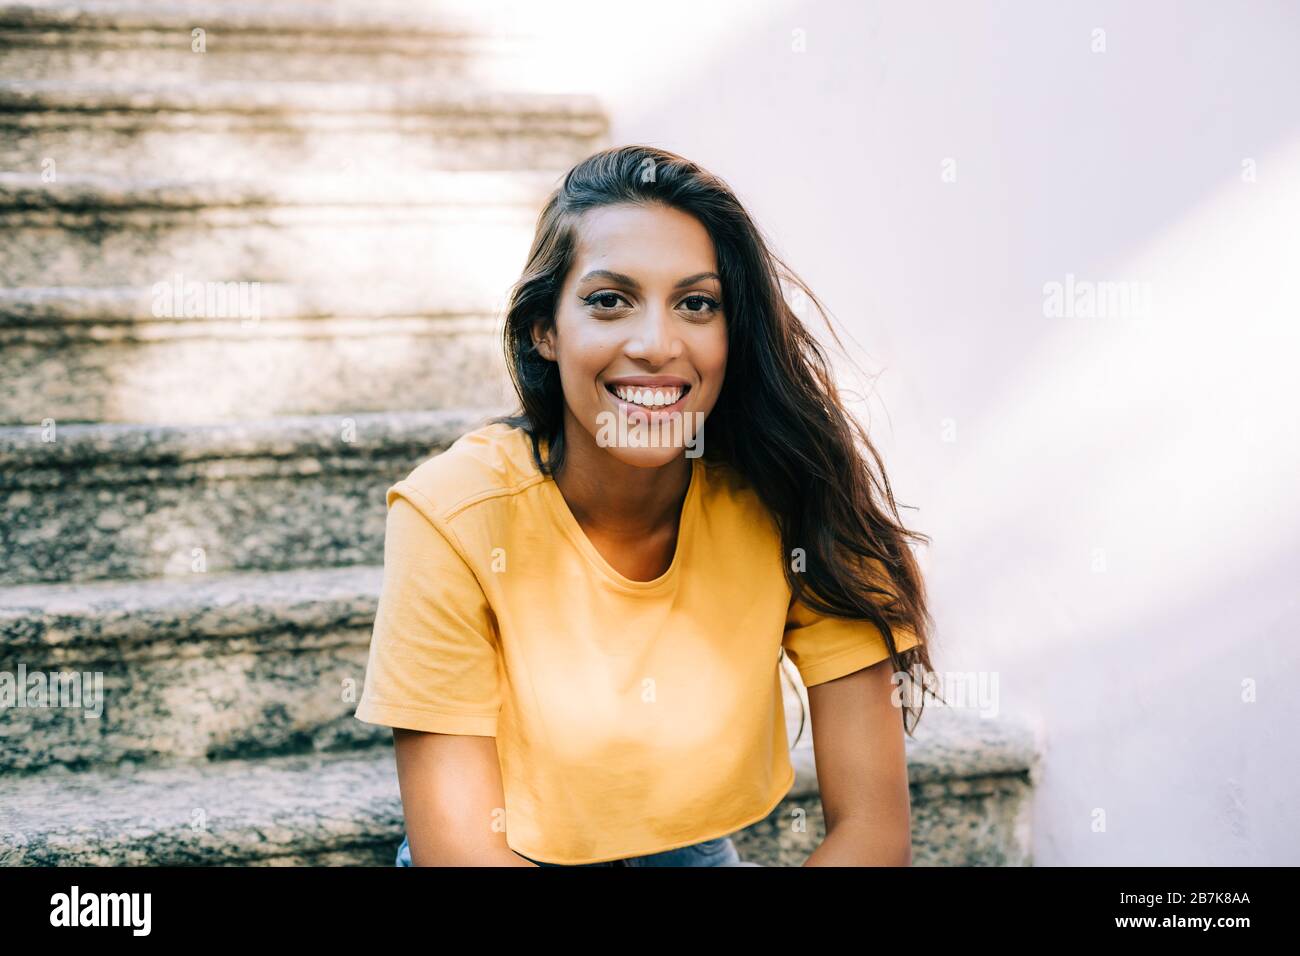 Bild eines latinamerikanischen Mädchens, das lächelnd auf der Treppe sitzt Stockfoto